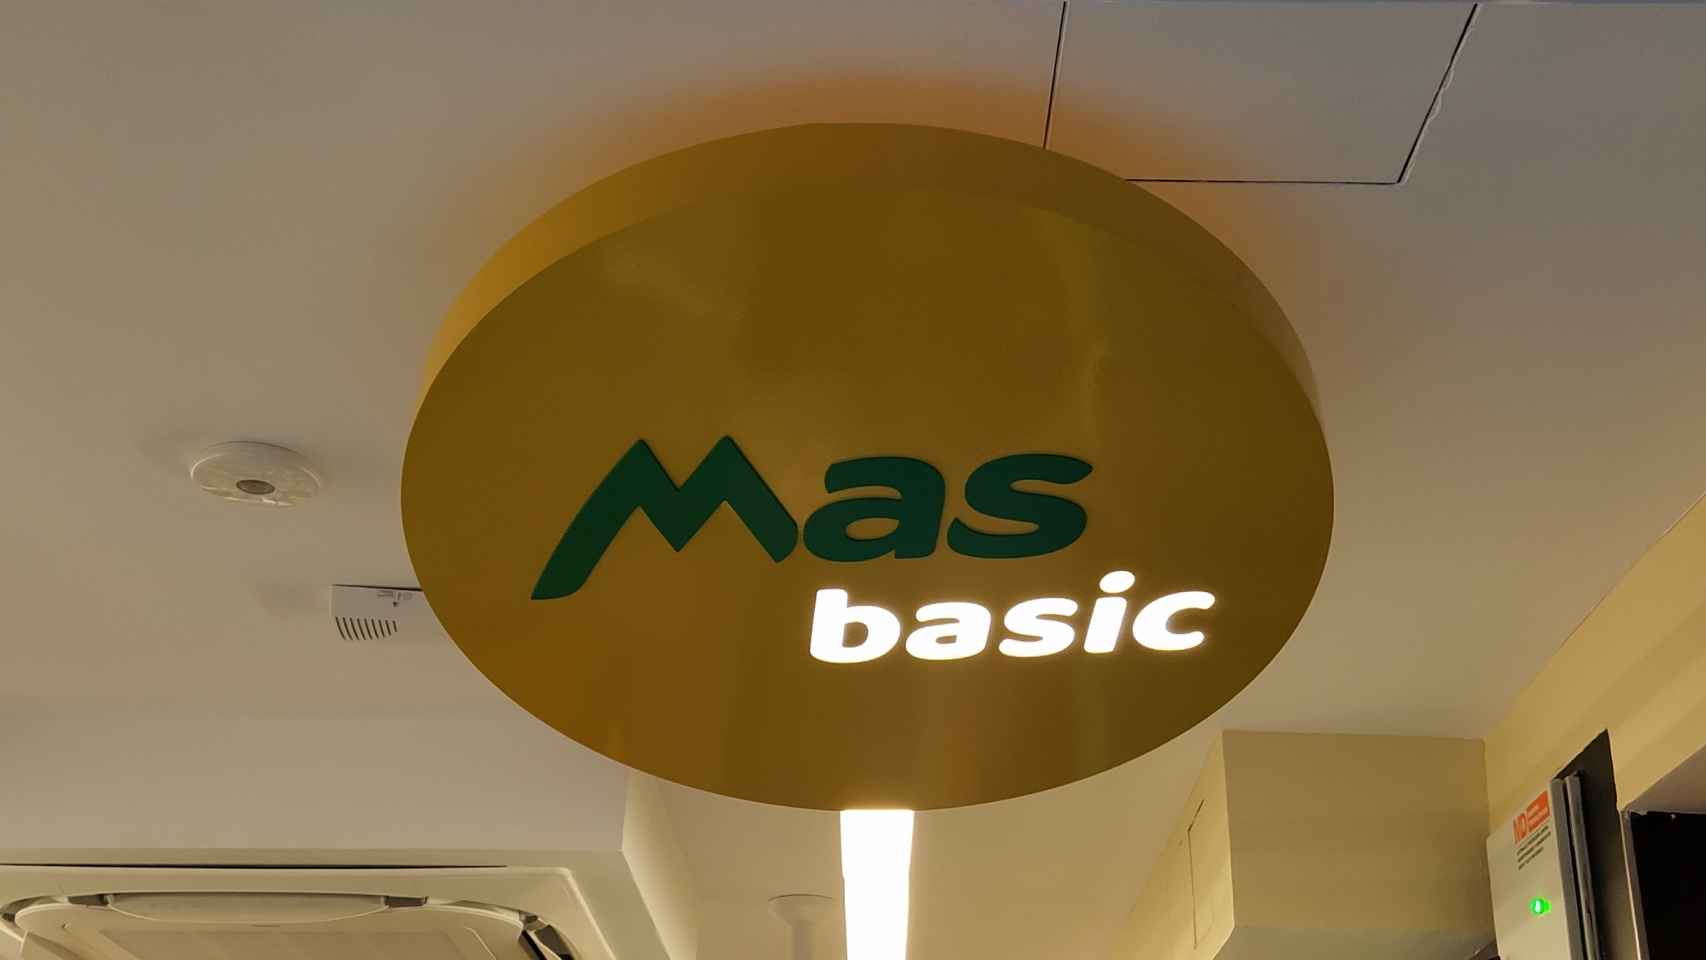 Más Basic, la nueva línea de supermercados de barrio de Ahorramás.